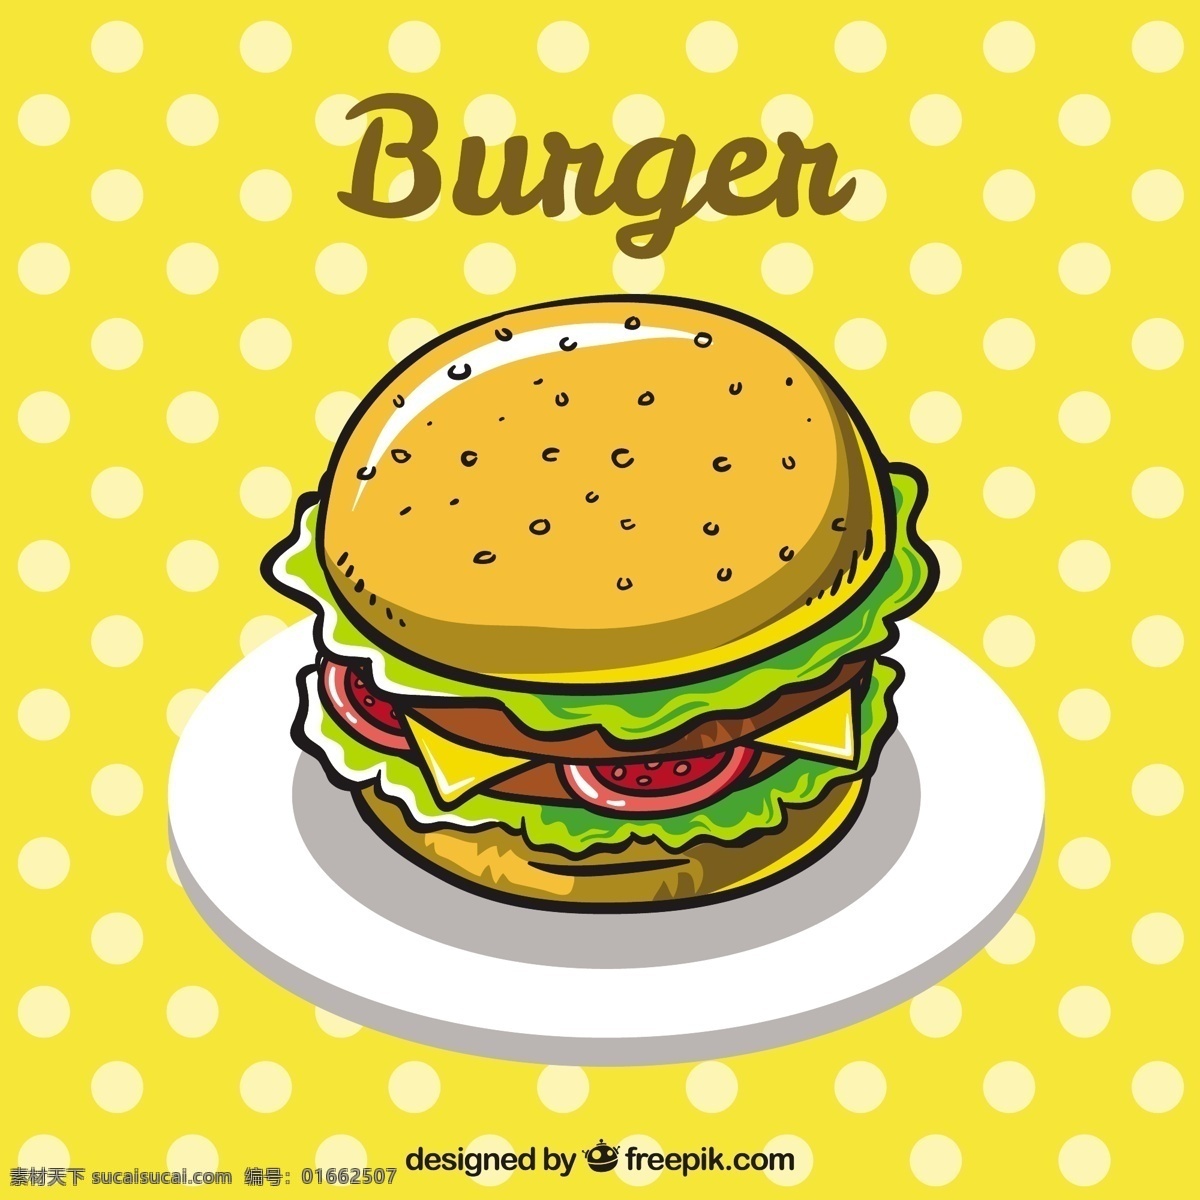 点缀 美味 汉堡 背景 食物 菜单 颜色 扁平 丰富多彩 快餐 点 平面设计 食物菜单 奶酪 吃 汉堡包 番茄 午餐 小吃 餐